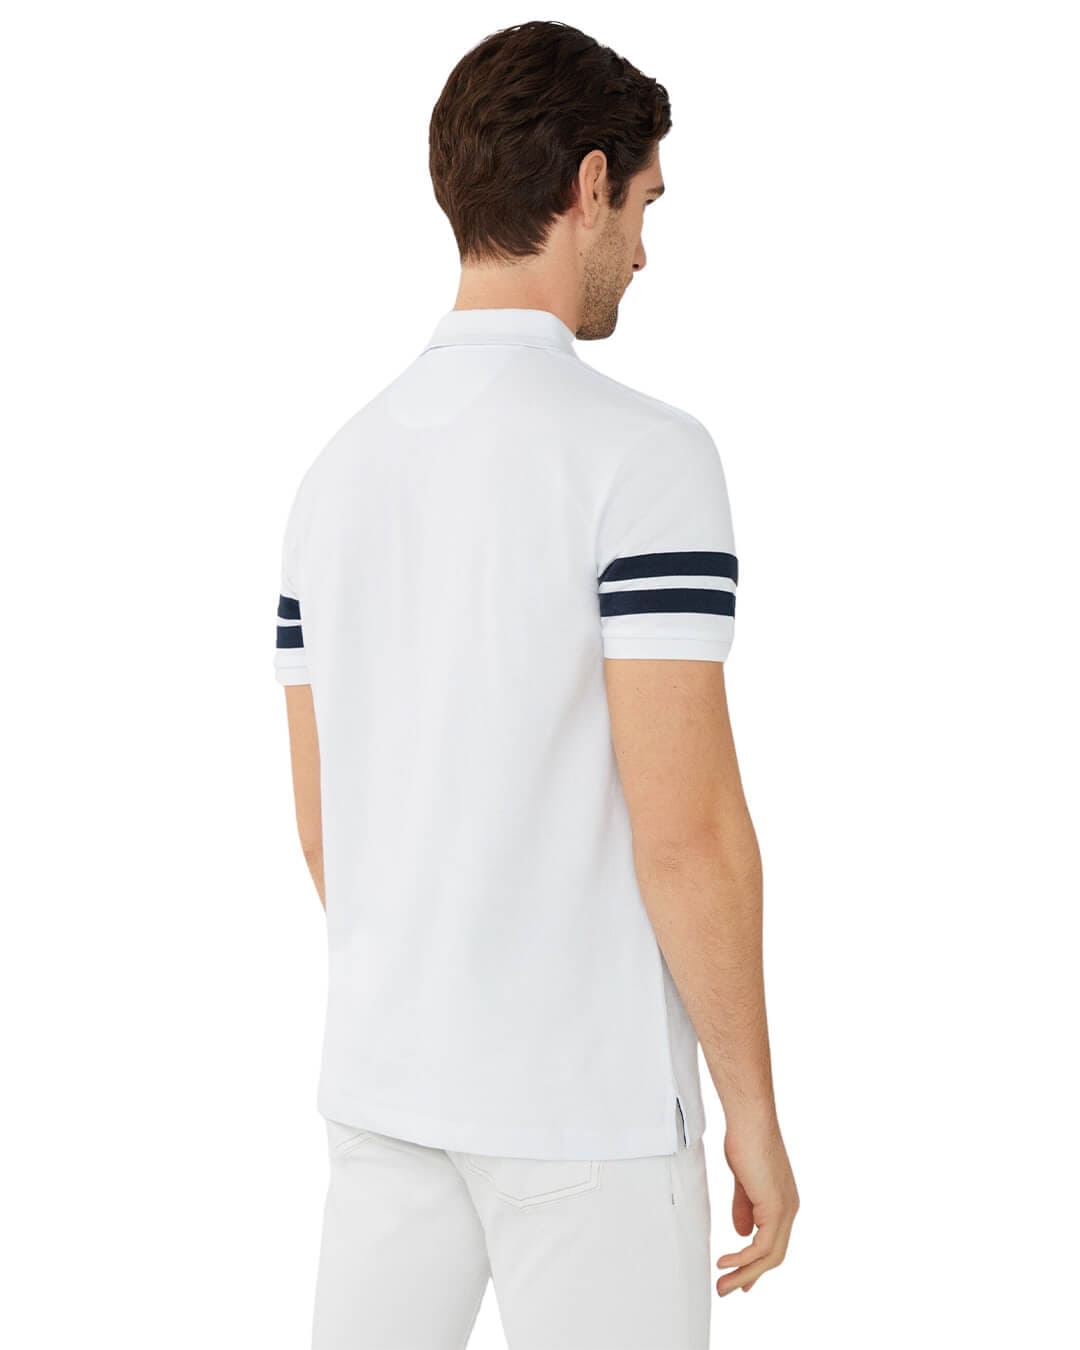 Hackett Polo Shirts Hackett White Heritage Striped Sleeve Polo Shirt